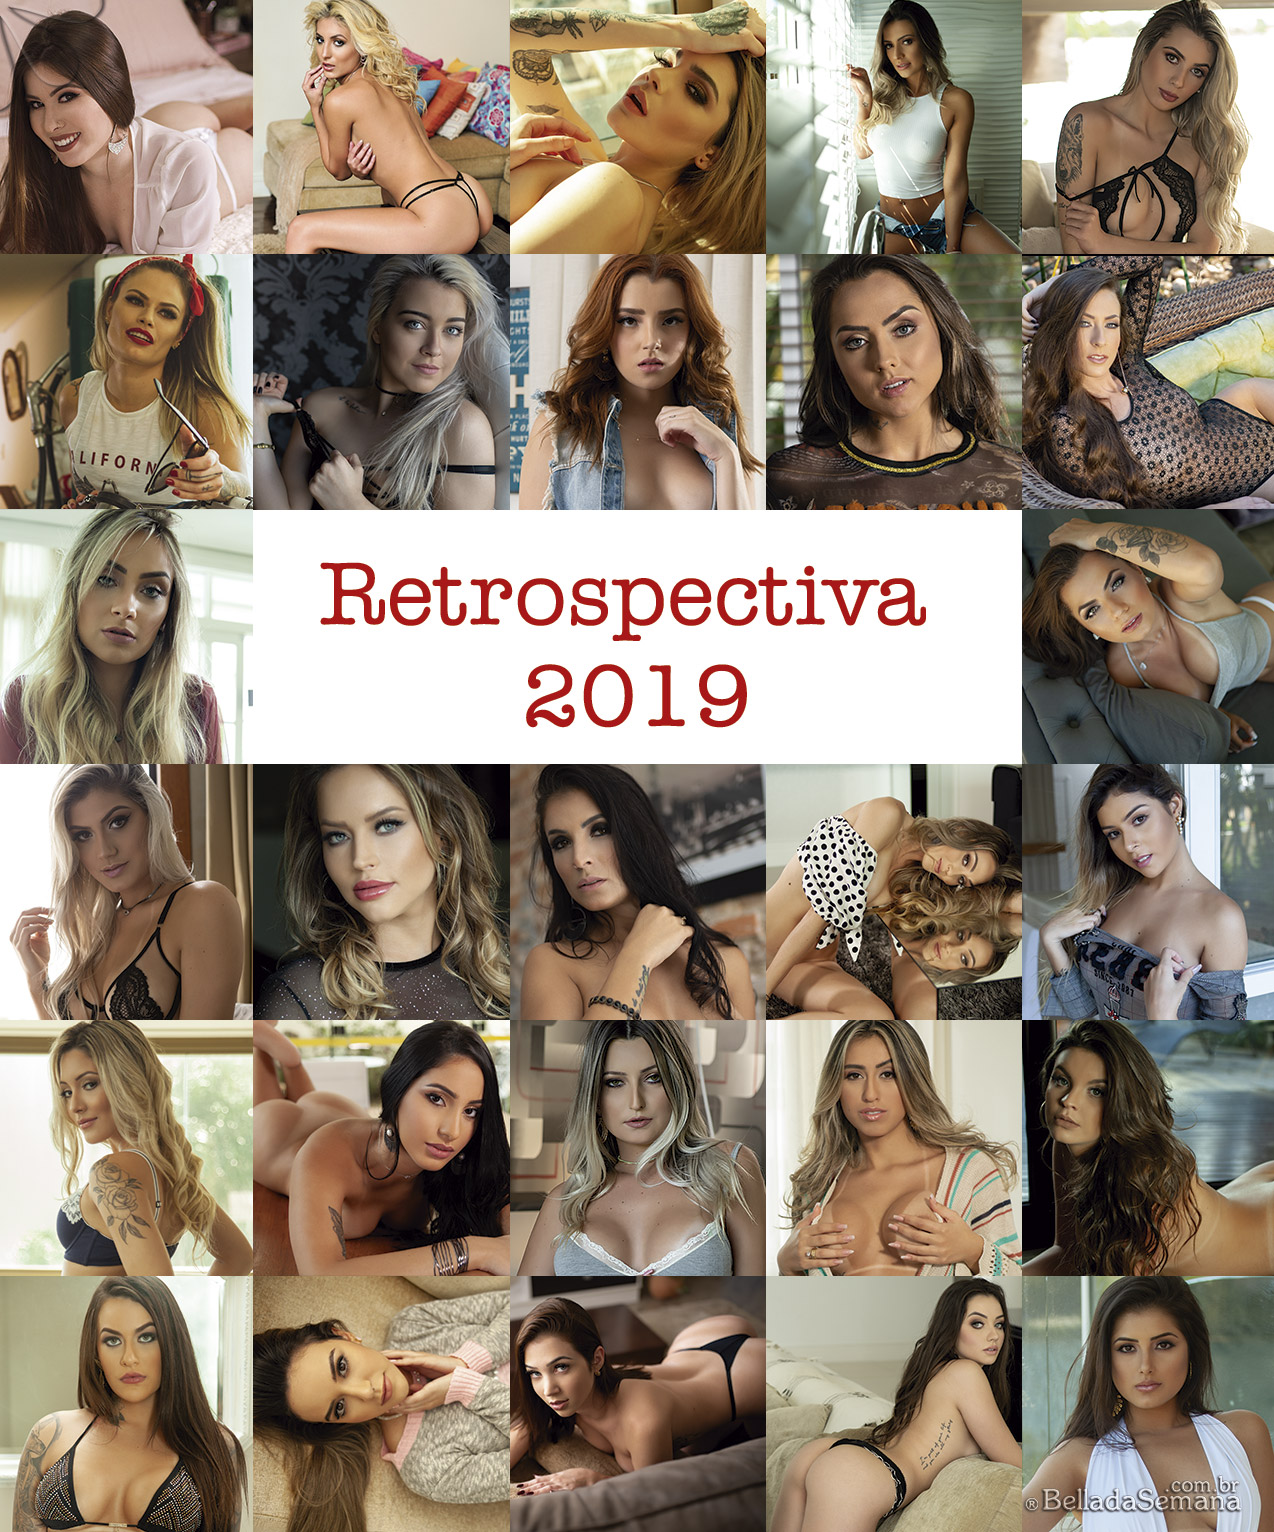 Retrospectiva 2019 - Bella da Semana